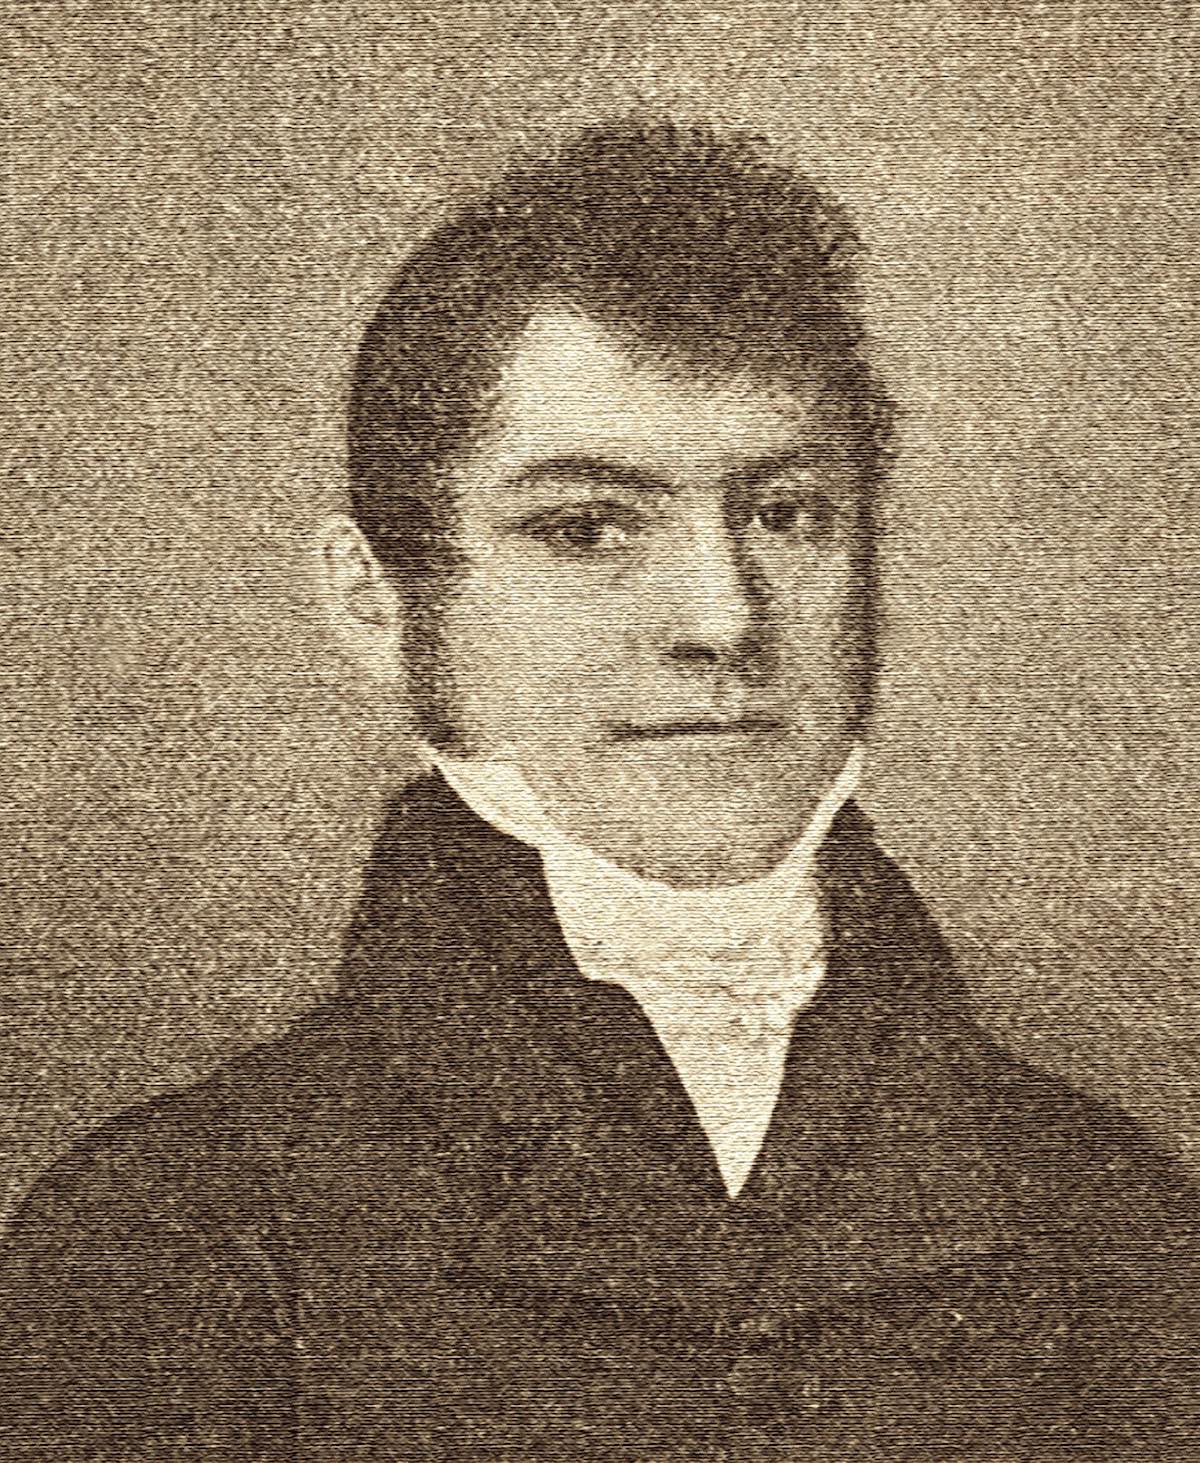 BOVET 1822 - Edouard Bovet_Founder